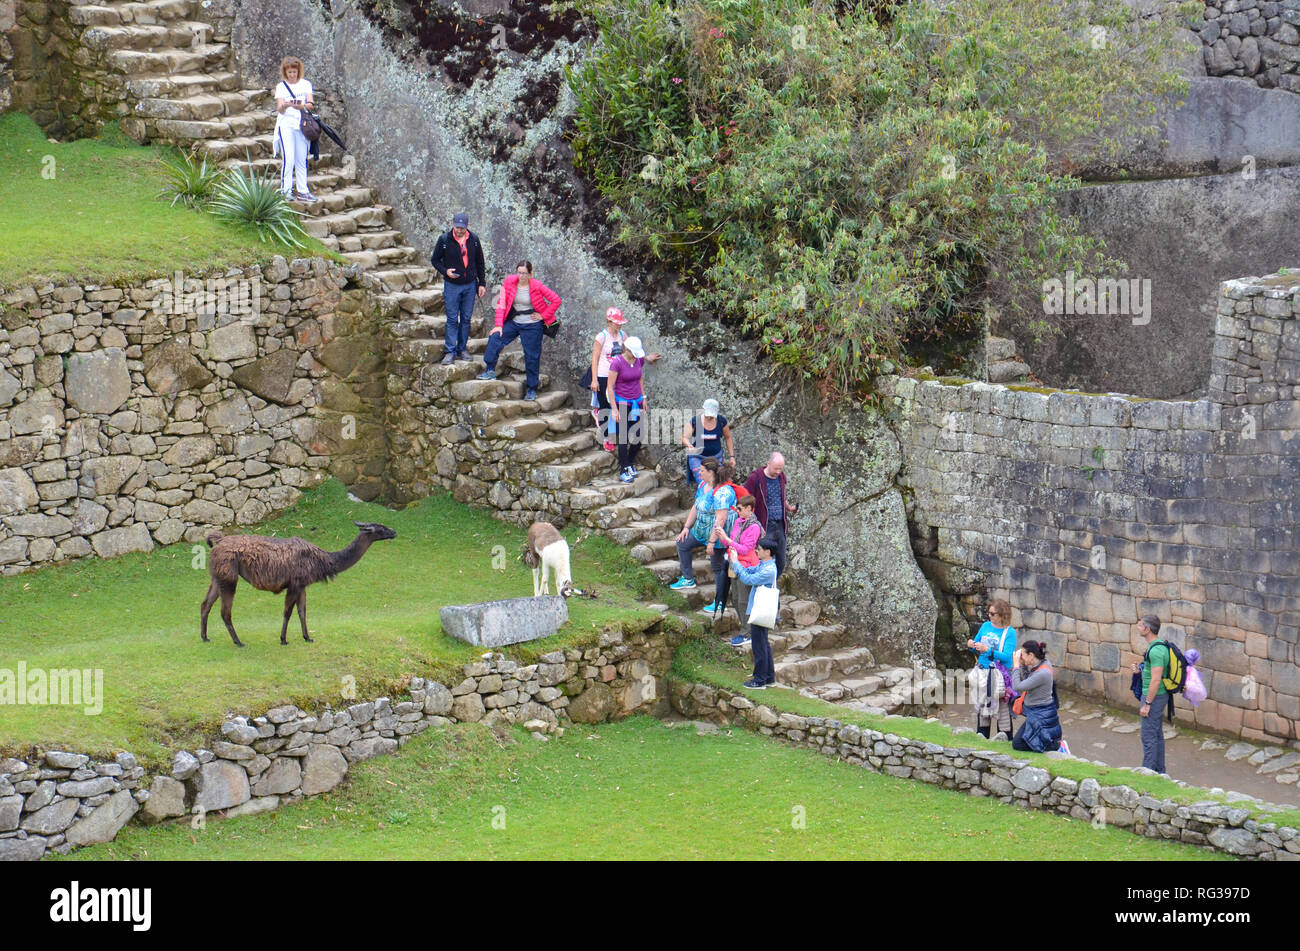 MACHU PICCHU / PERU, August 16, 2018: Tourists take photographs of llamas at Machu Picchu Stock Photo